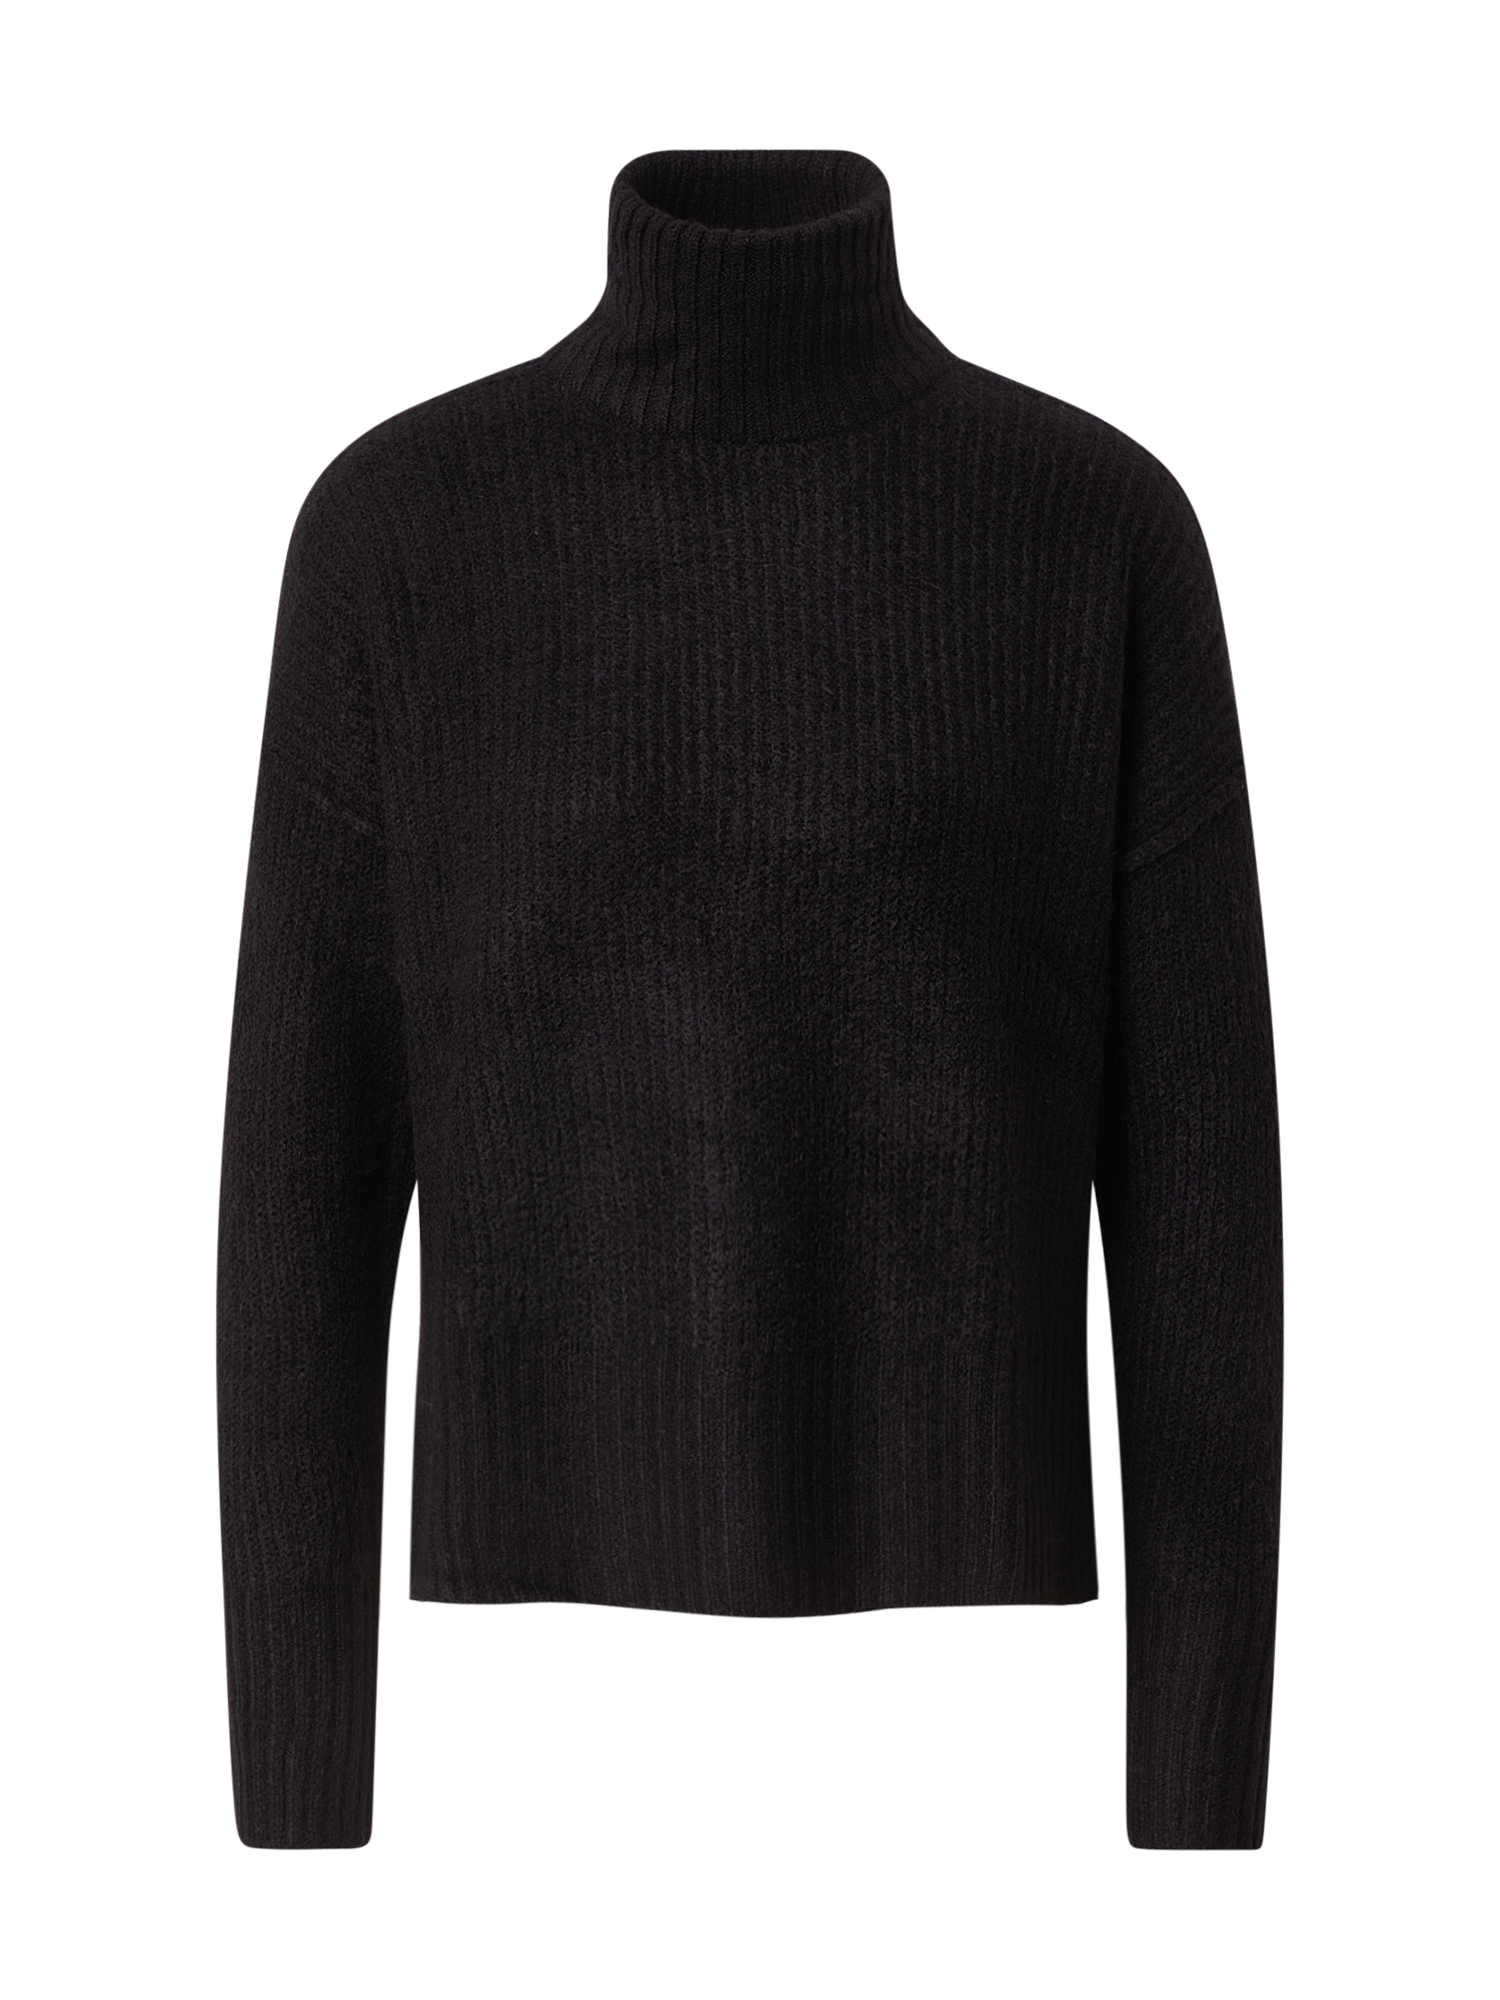 Swetry & dzianina Kobiety VILA Sweter w kolorze Czarnym 